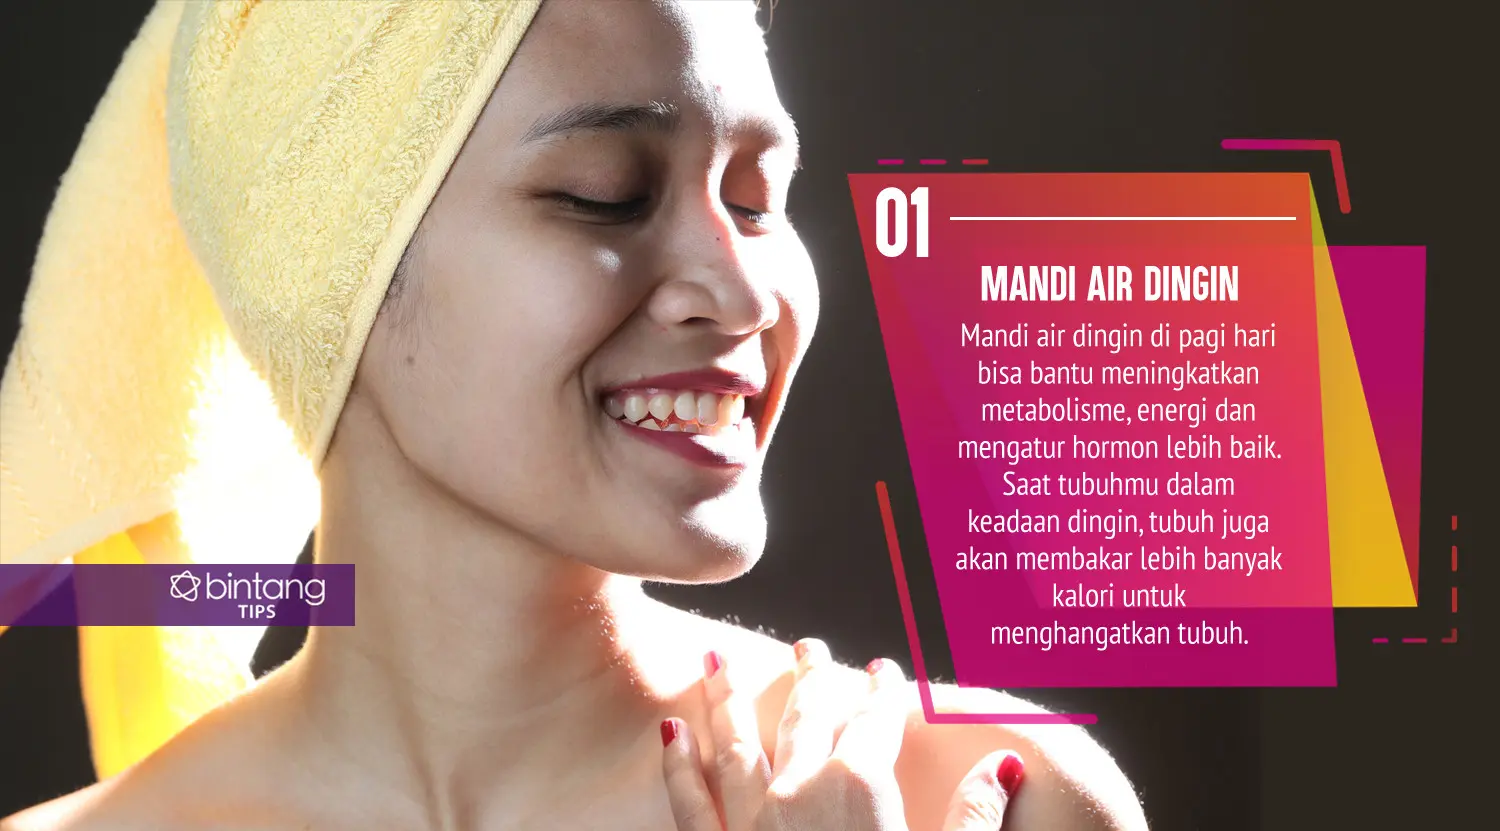 Ini kebiasaan yang bisa bikin kamu kurus. (Foto: Adrian Putra, Digital Imaging: Nurman Abdul Hakim/Bintang.com)